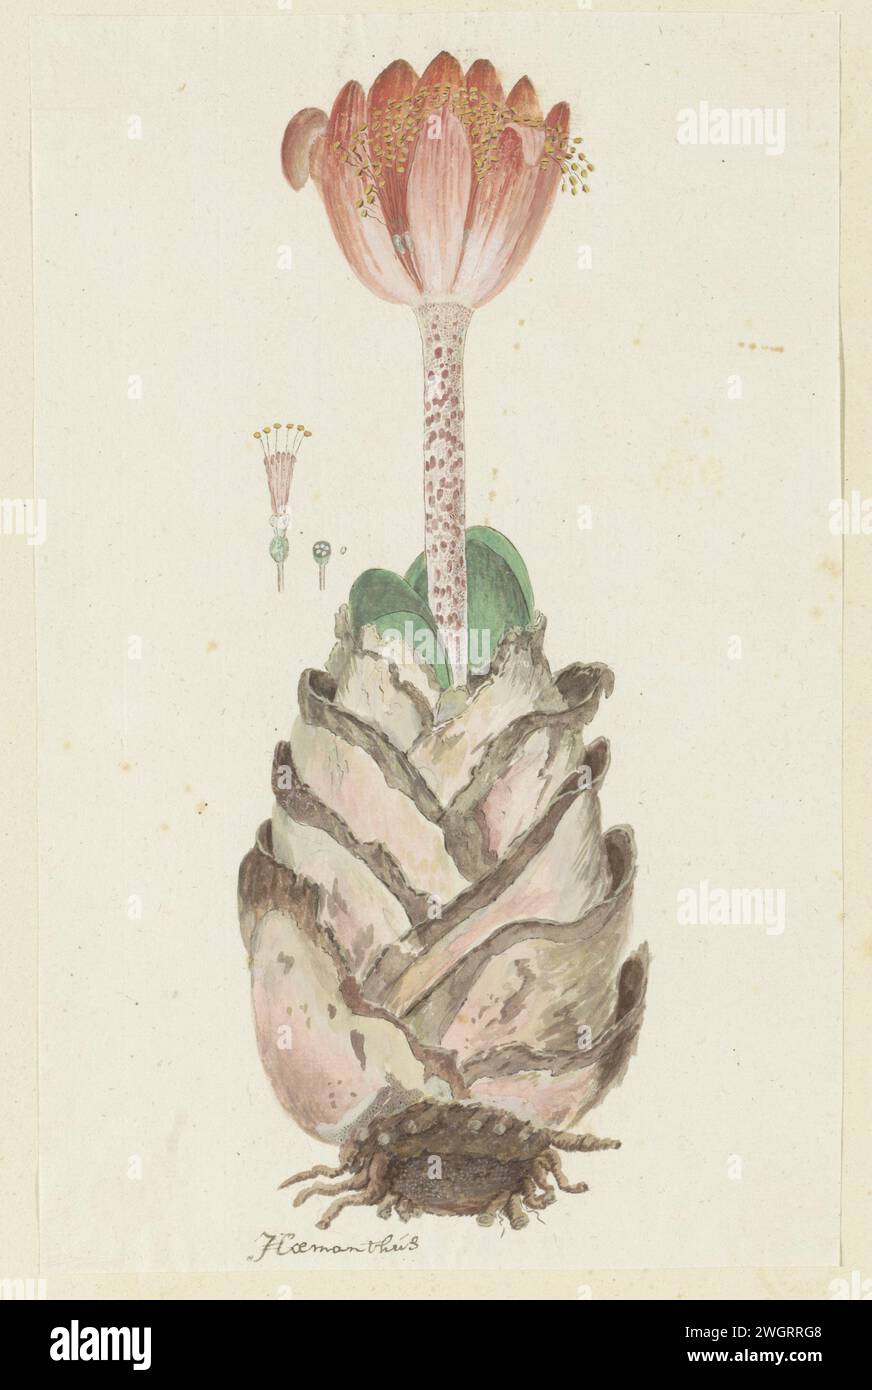 Haemanthus coccineus L. (Blood flower; Bloedblom), 1777 - 1786 drawing Haemanthus coccineus L.  paper. deck paint. ink. pencil. chalk. watercolor (paint) pen / brush plants; vegetation Stock Photo